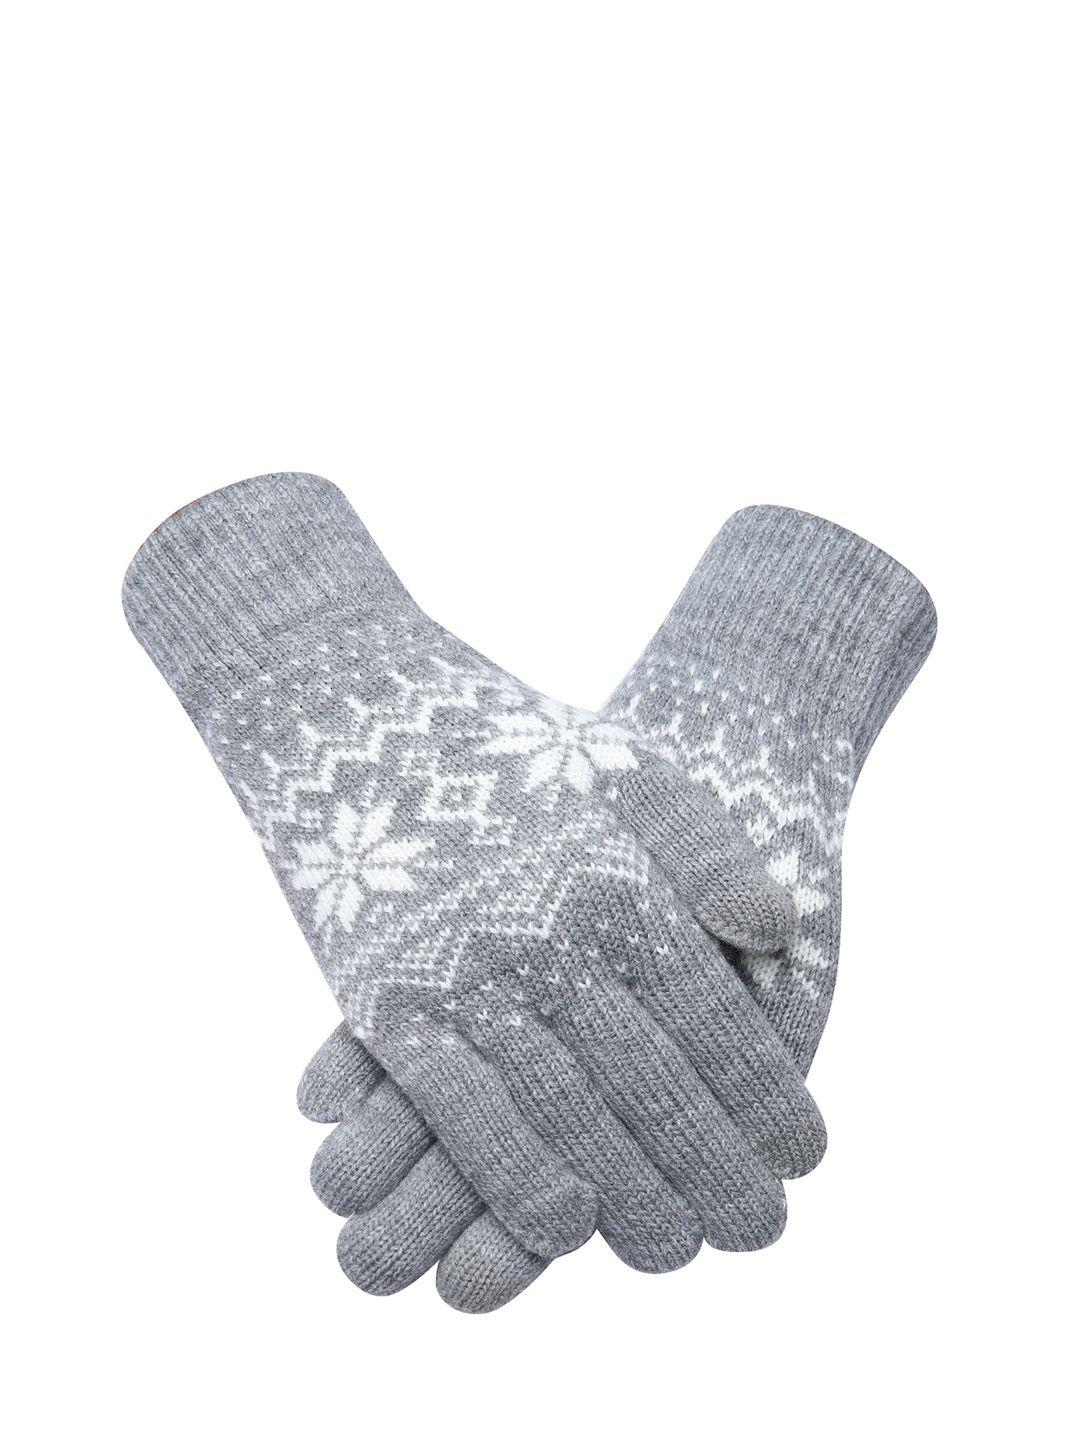 loom legacy men patterned hand gloves